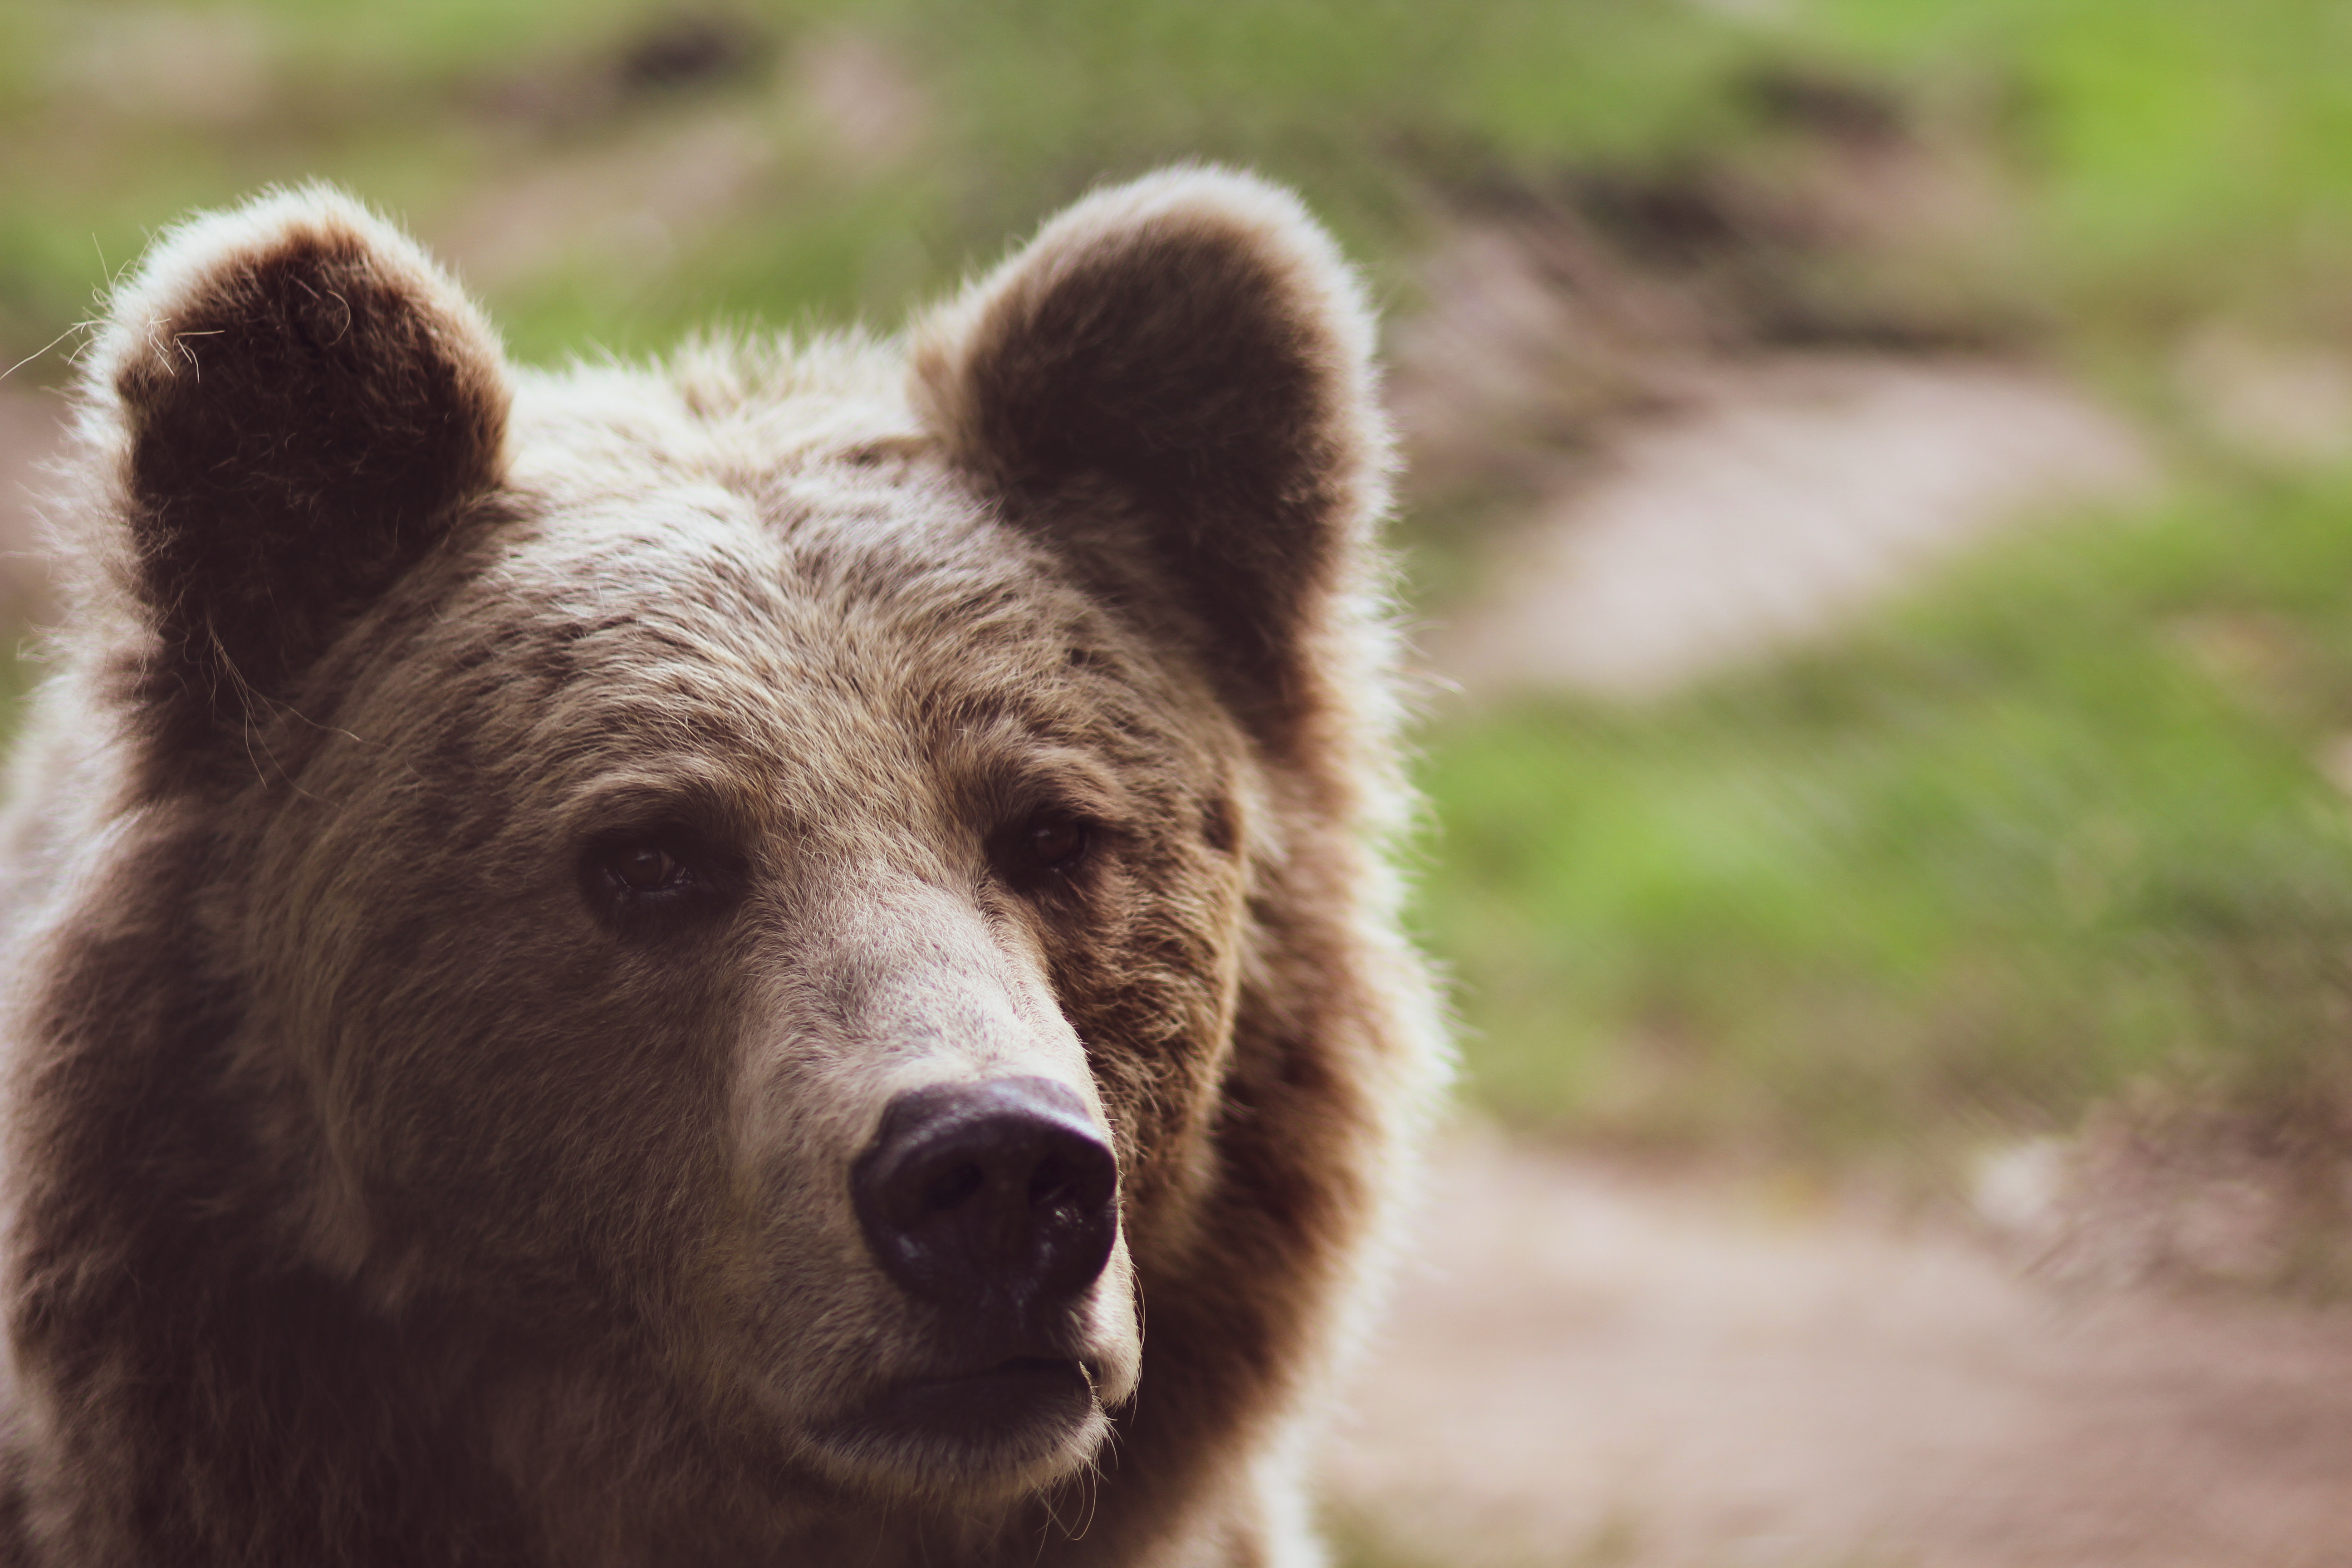 DA LI NAM PREMA NARODNOM VJEROVANJU STIŽE PROLEĆE? Medved Beo zoo-vrta se danas nije vratio u zimski san